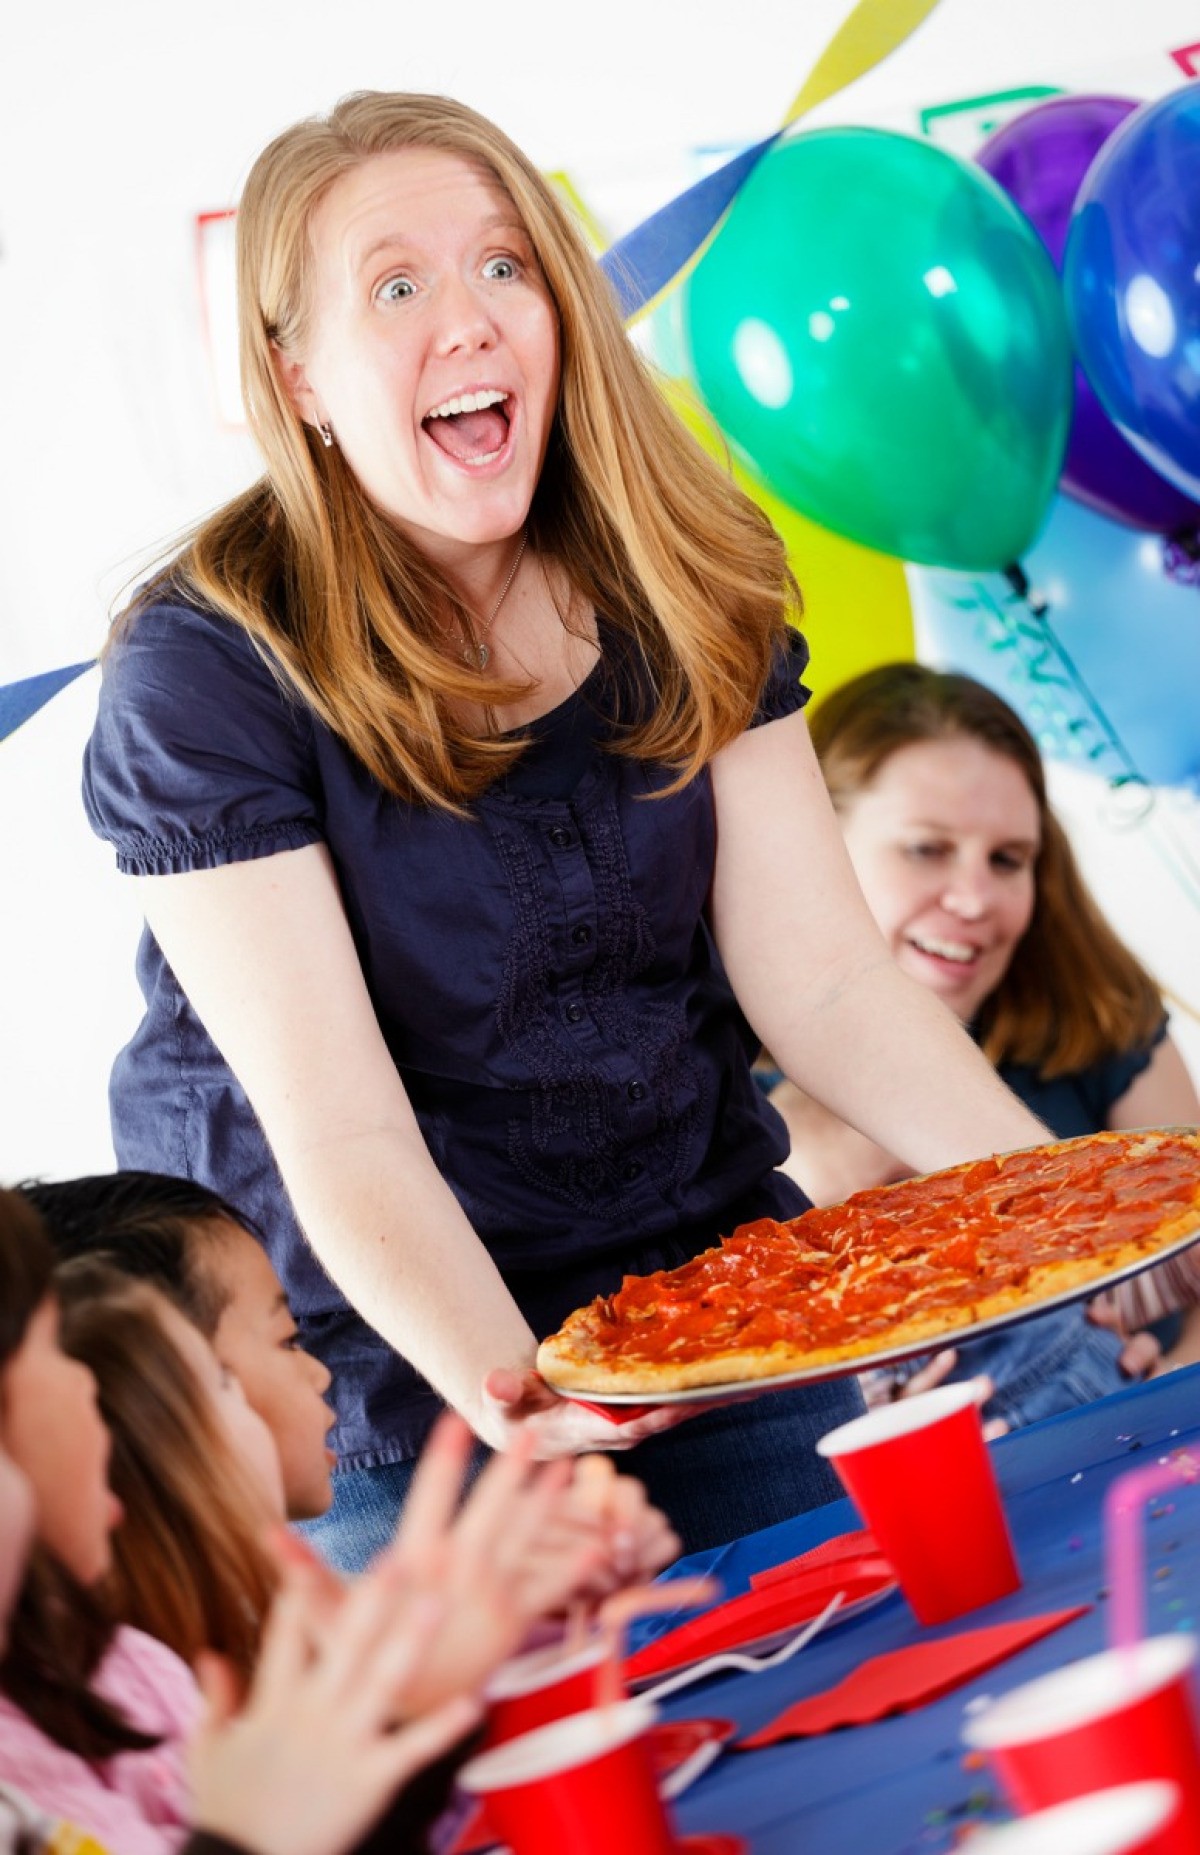 День рождения пицца